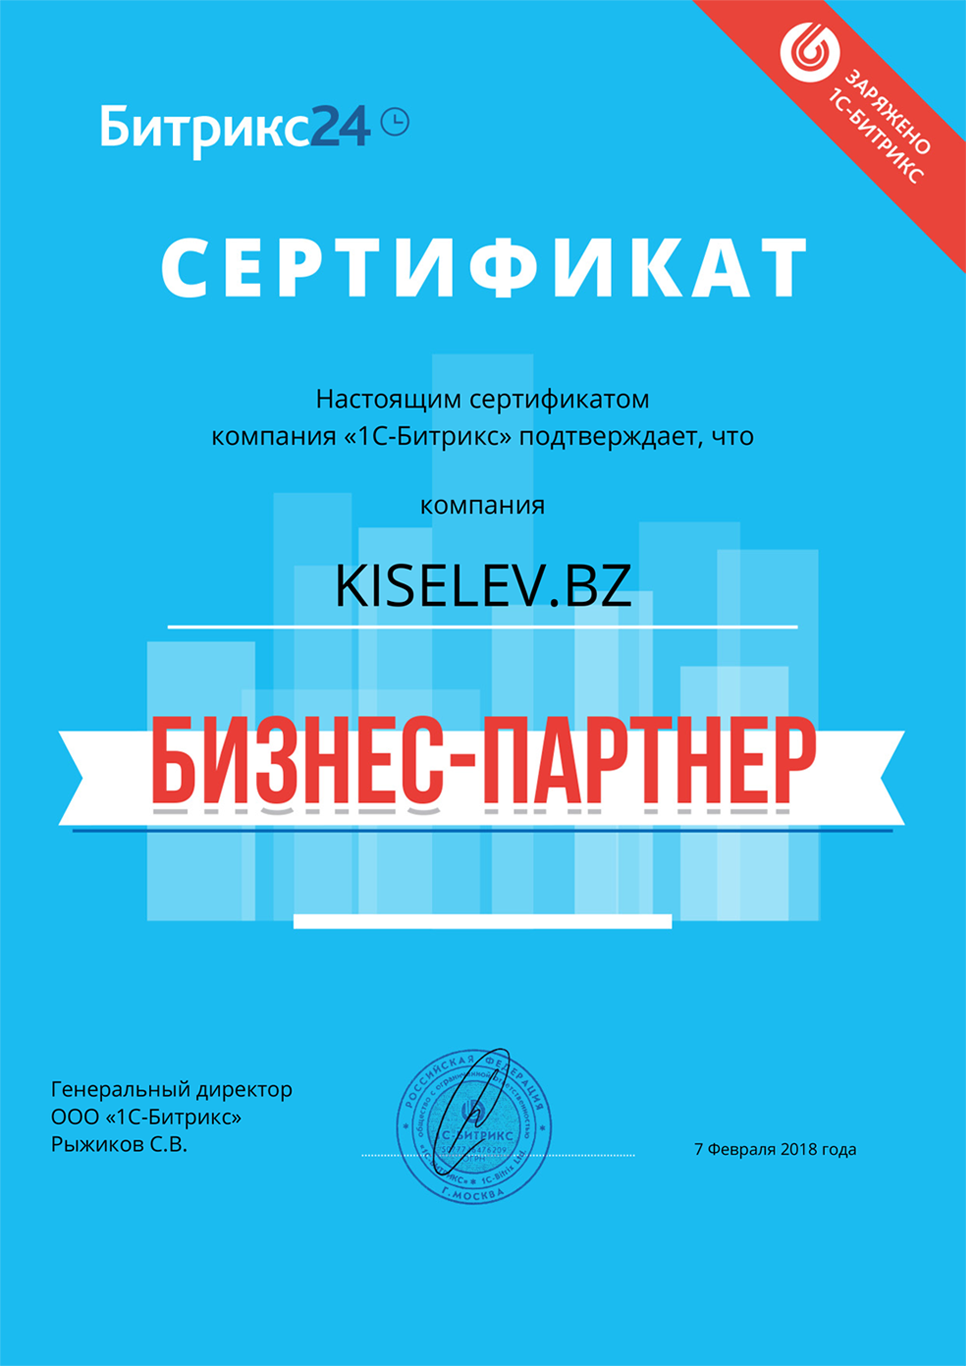 Сертификат партнёра по АМОСРМ в Приморске